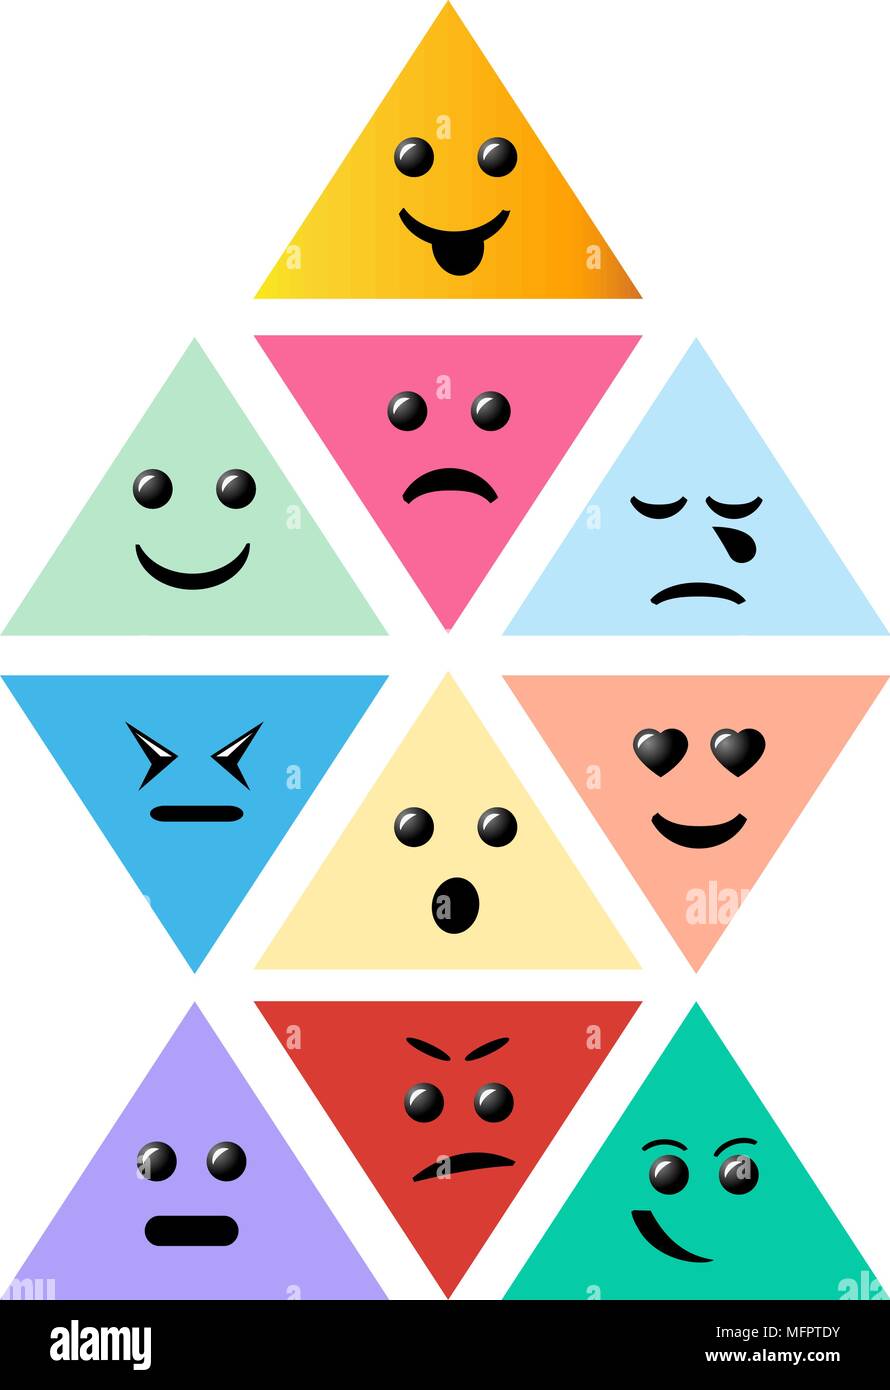 Définir l'icône pyramide Smiley. Creative cartoon style sourit avec diff Illustration de Vecteur